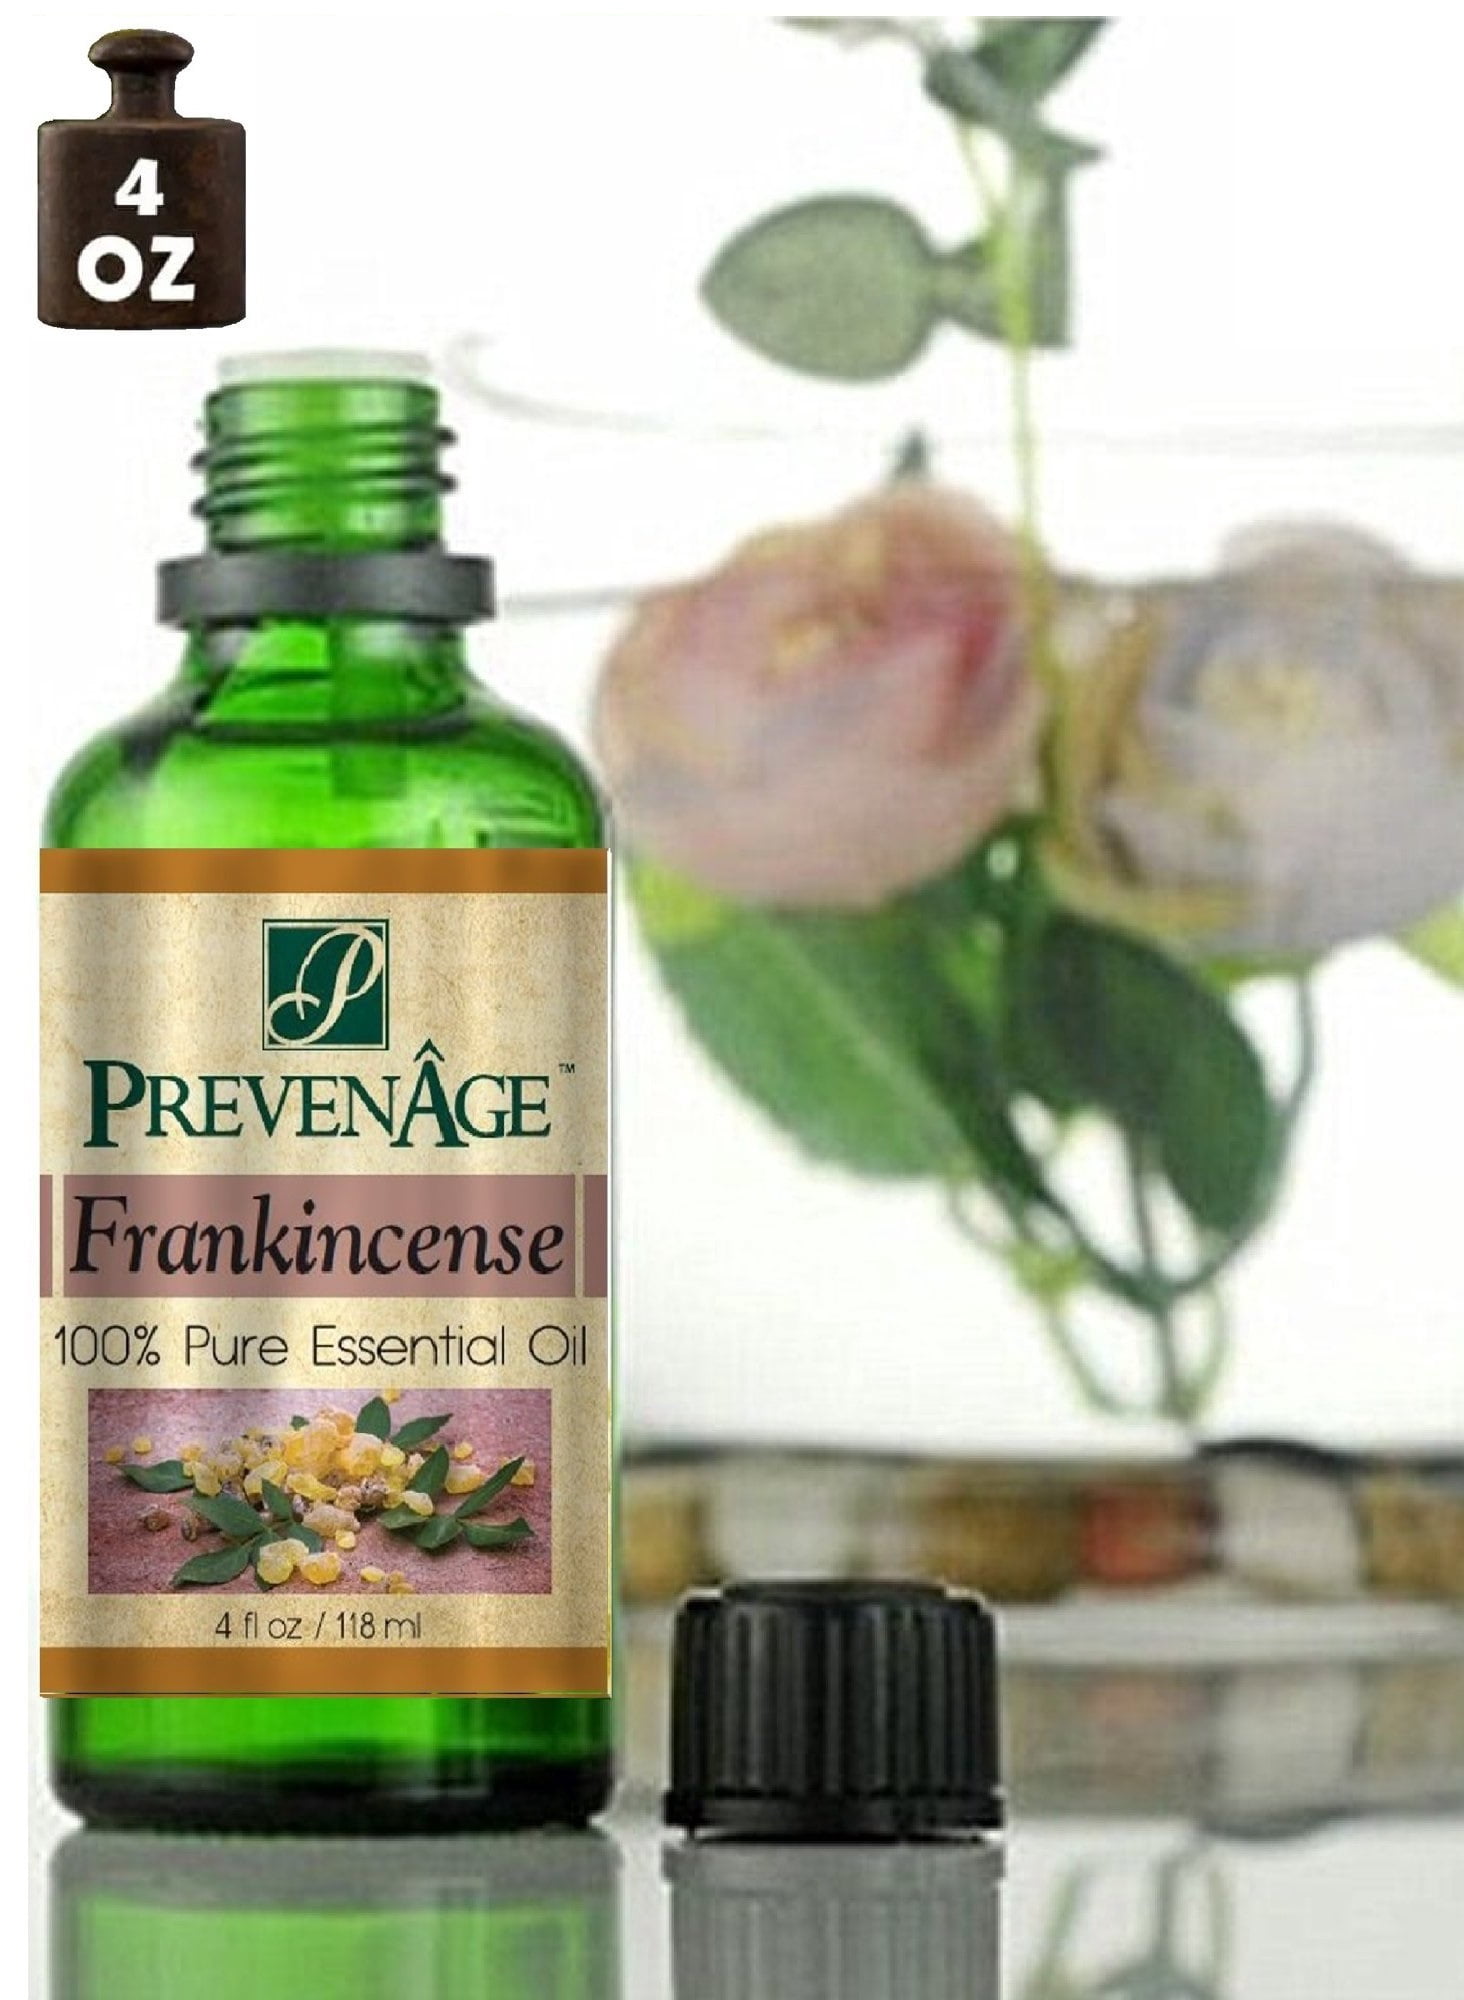 SVA Frankincense Essential Oil 4oz (118 ml) Boswellia Serrata Premium  Essential Oil with Dropper for Diffuser, Aromatherapy, Hair Care and Skin